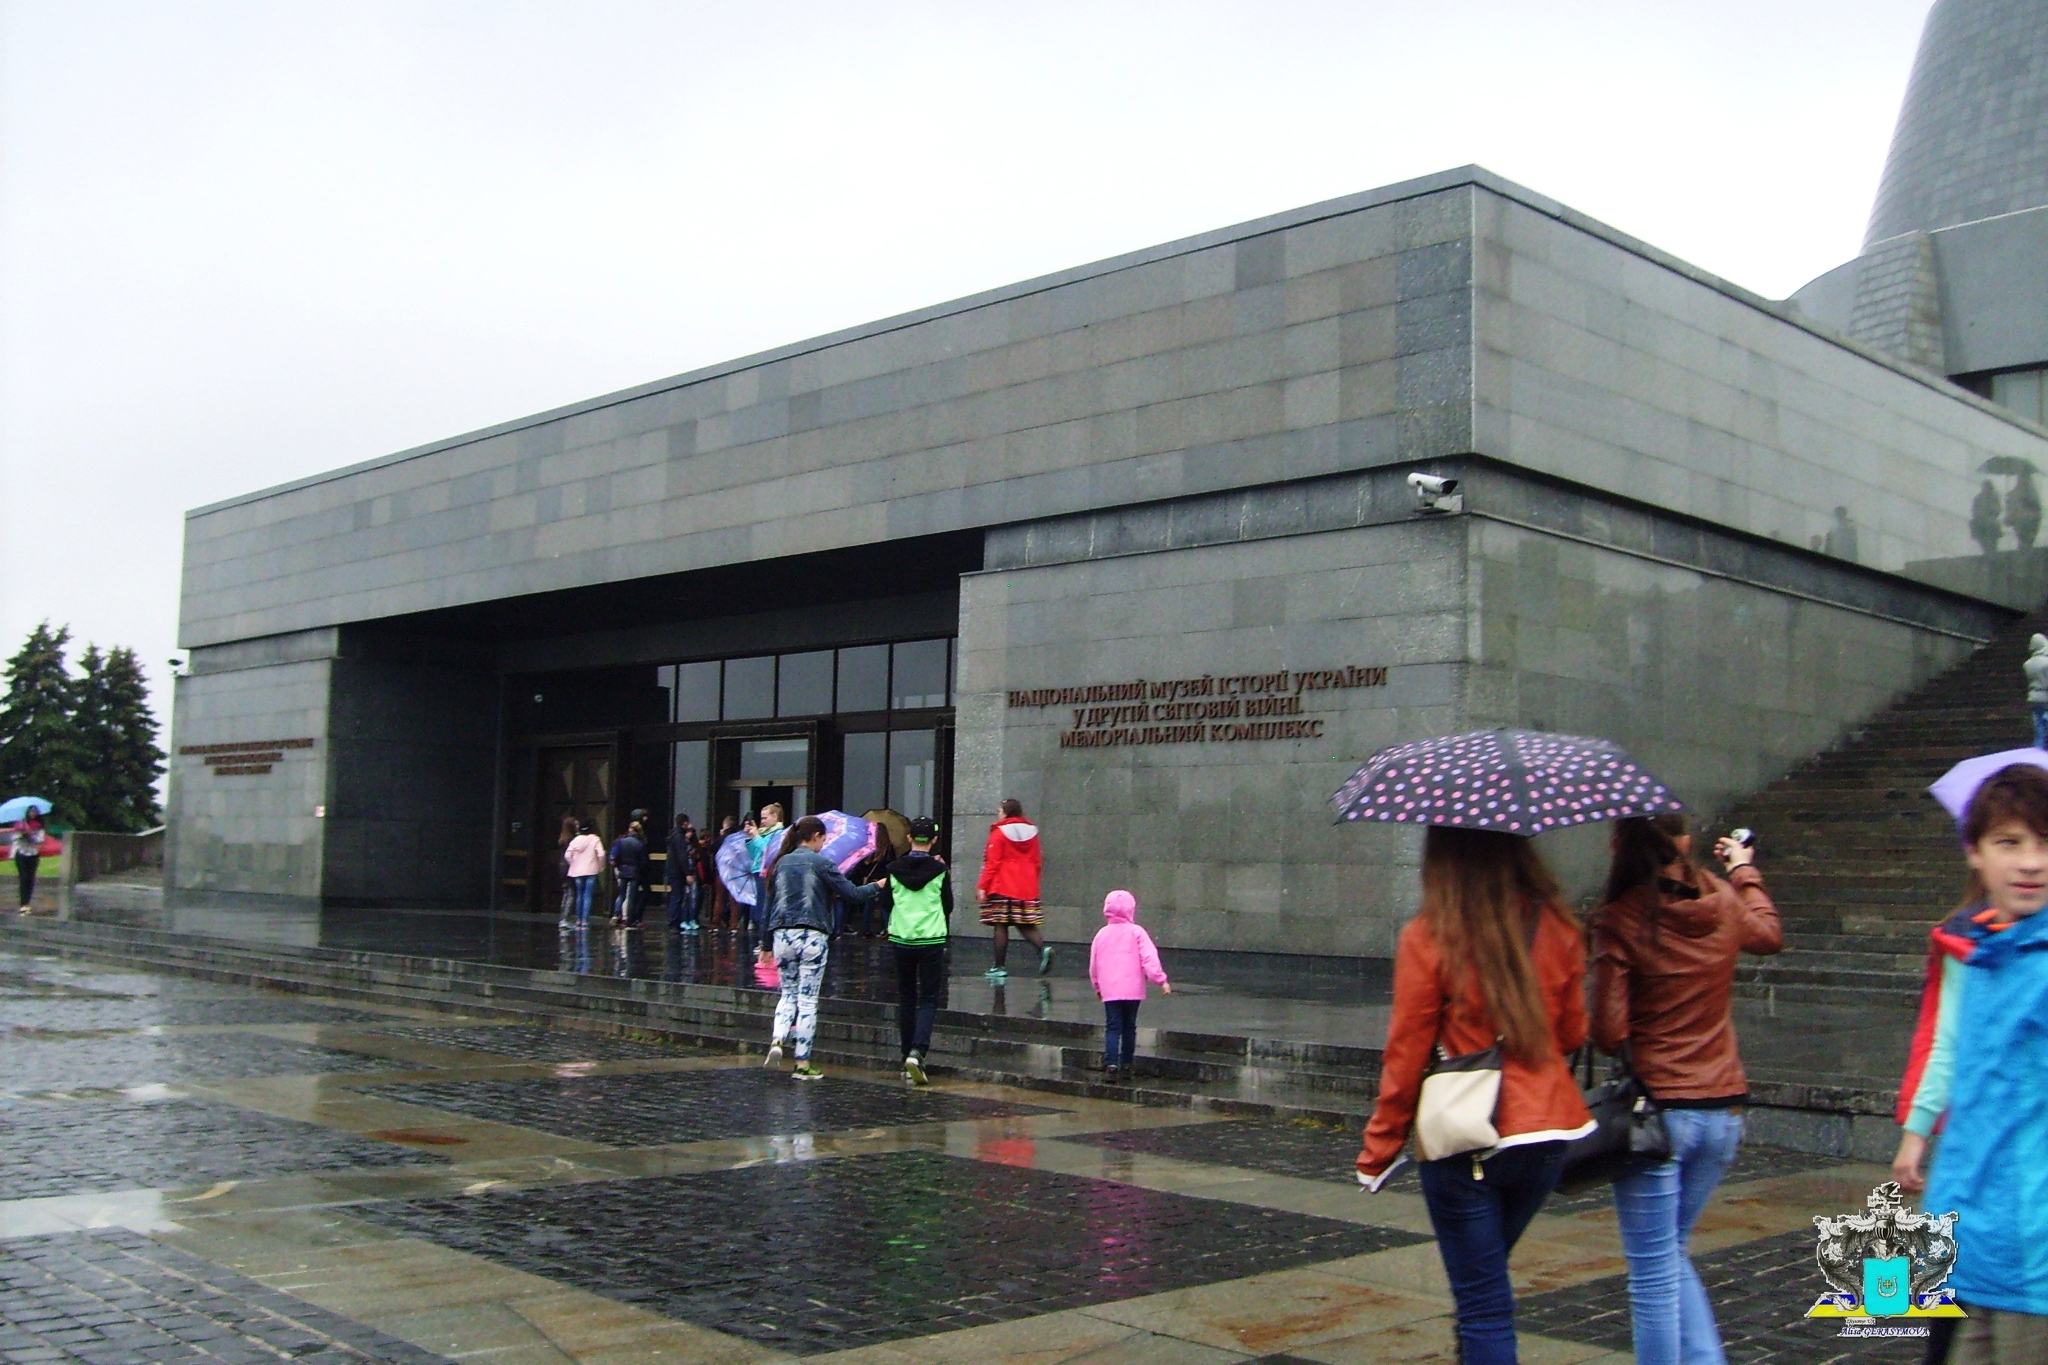 Керівництво Музею історії України у Другій світовій війні не дозволяє монтувати сцену, посилаючись на заборону Мінкульту